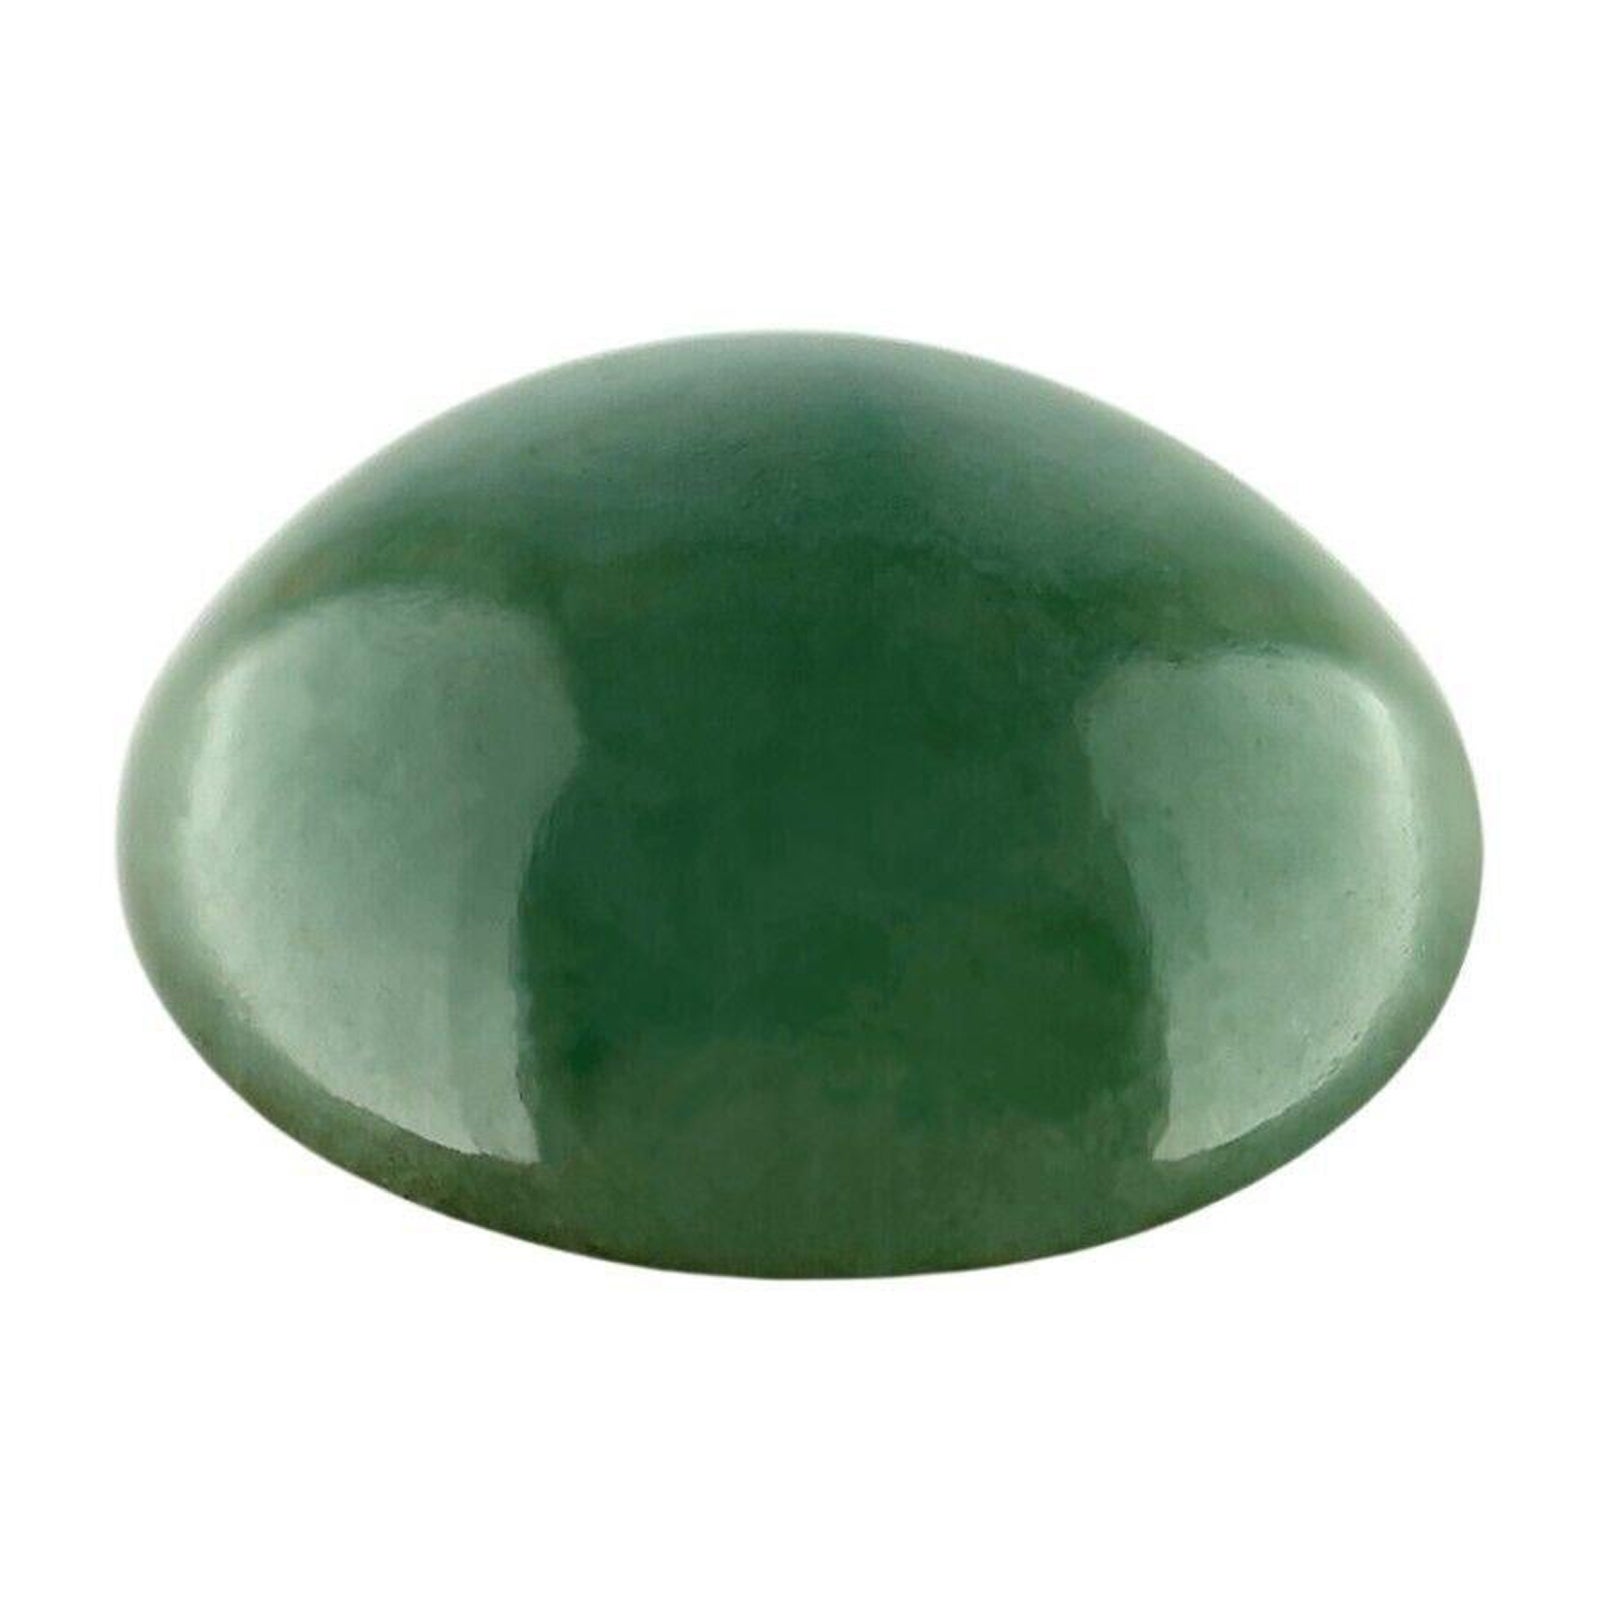 IGI Certified 6.67Ct Natural Green Jadeite Jade ‘A’ Grade Oval Cabochon Gem For Sale